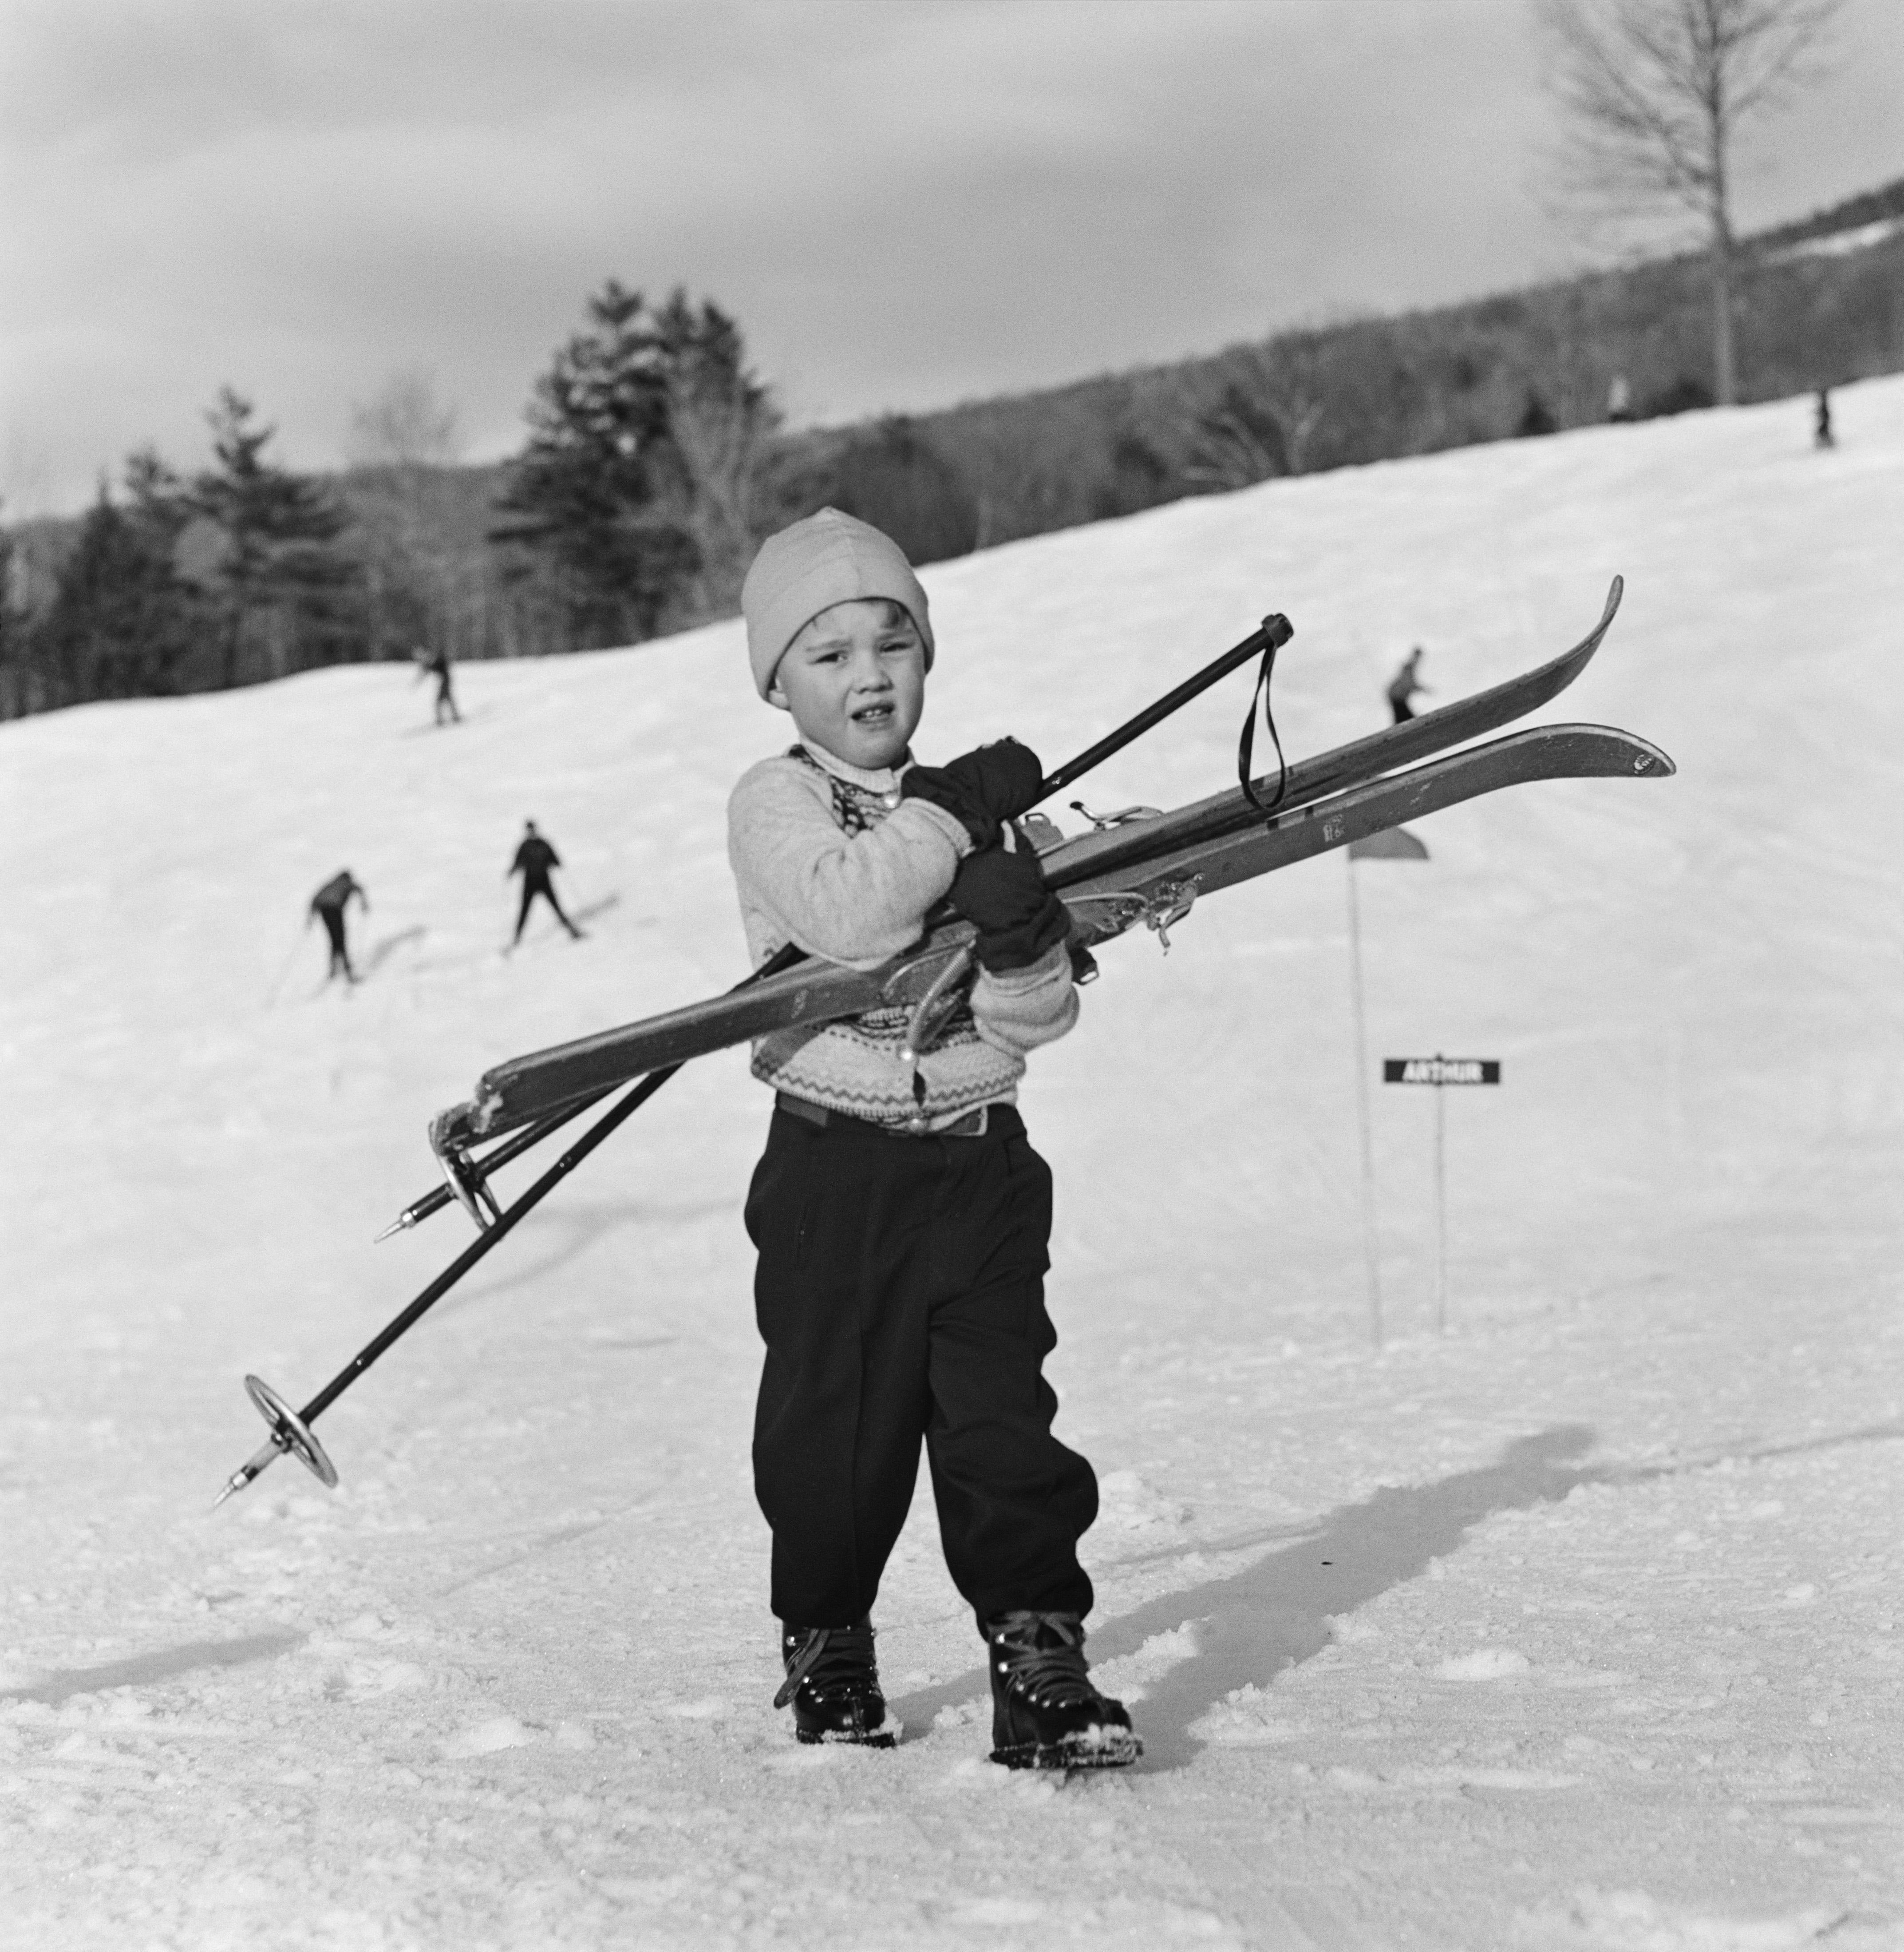 New England Skiing - 'Skiing Starters' (1955) - Limitierte Auflage mit Nachlassstempel - Silbergelatine-Fiberdruck

(Foto: Slim Aarons/Getty Images Archive) 

Ein junger Skifahrer zieht es vor, seine Skier die Piste in New Hampshire, 1955,